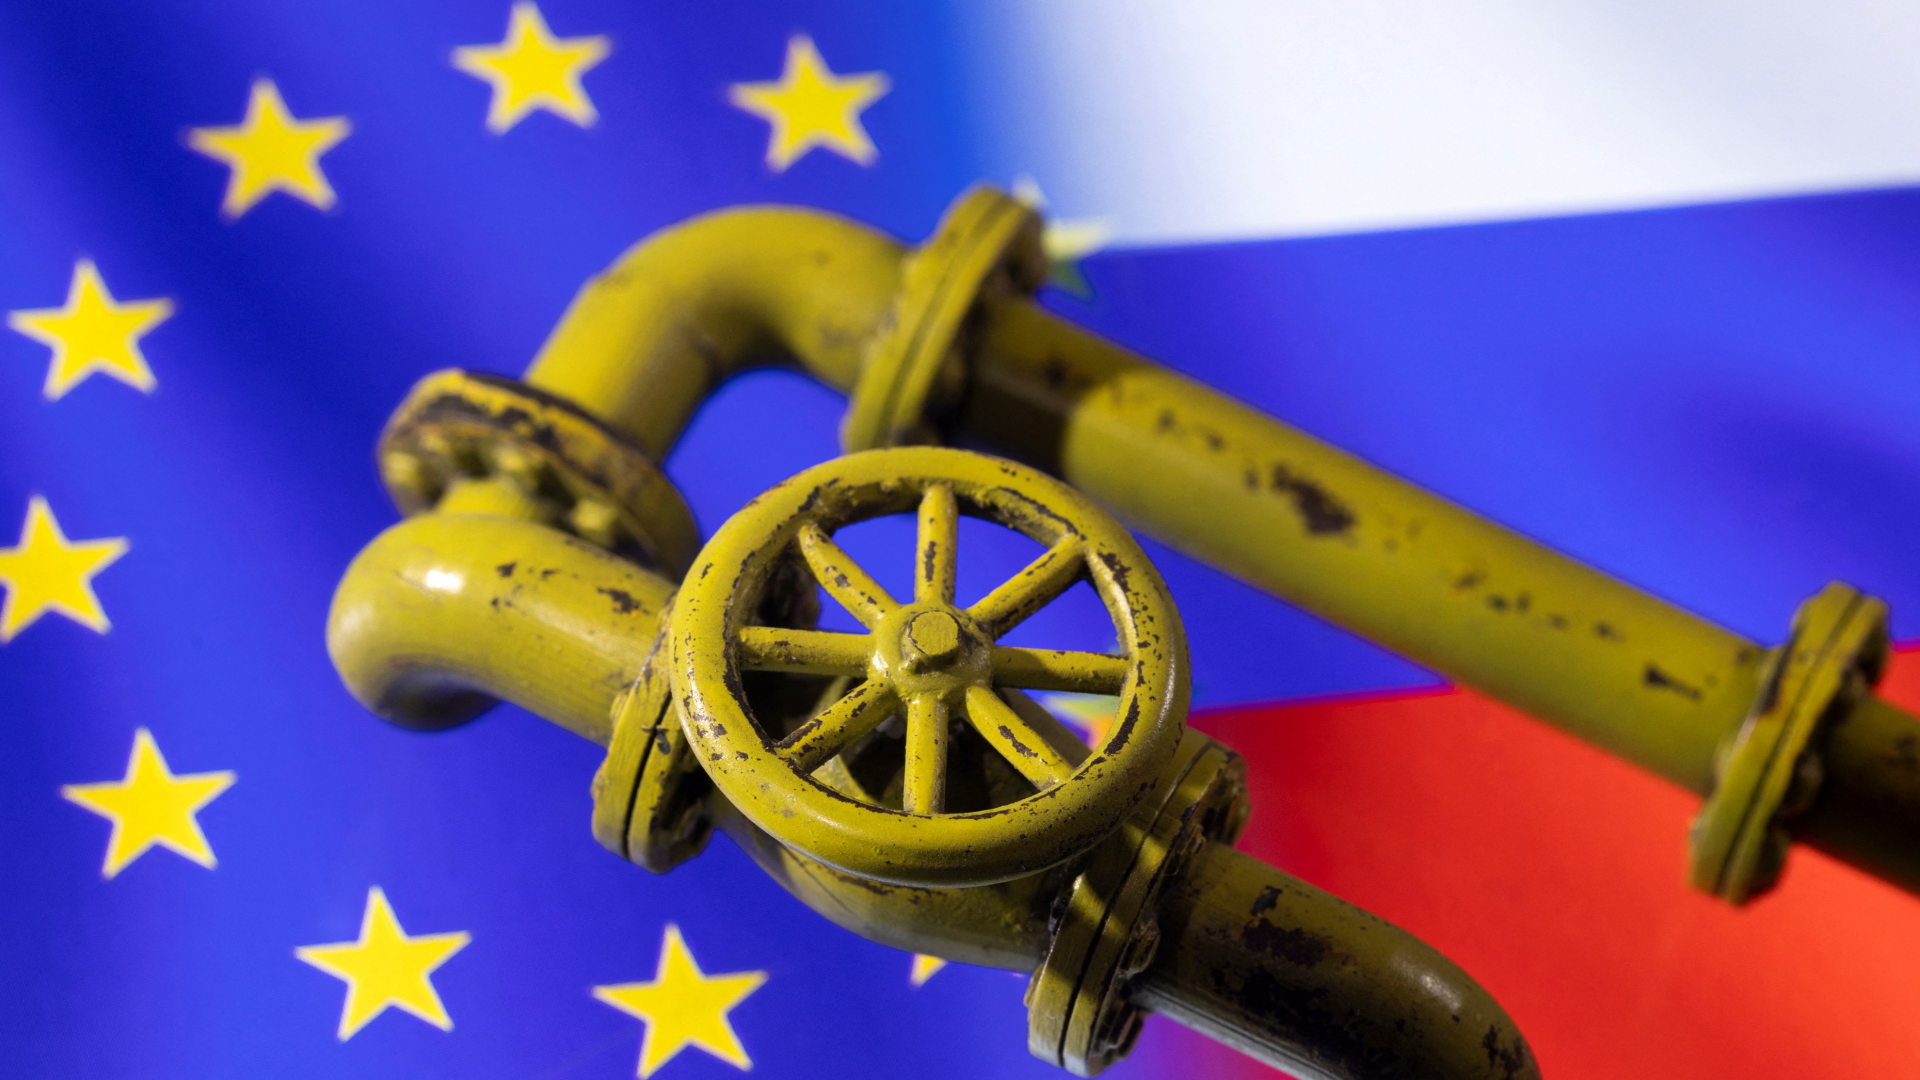 Das Ventil einer Erdgasleitung ist vor den Flaggen der EU und Russlands dargestellt. | REUTERS